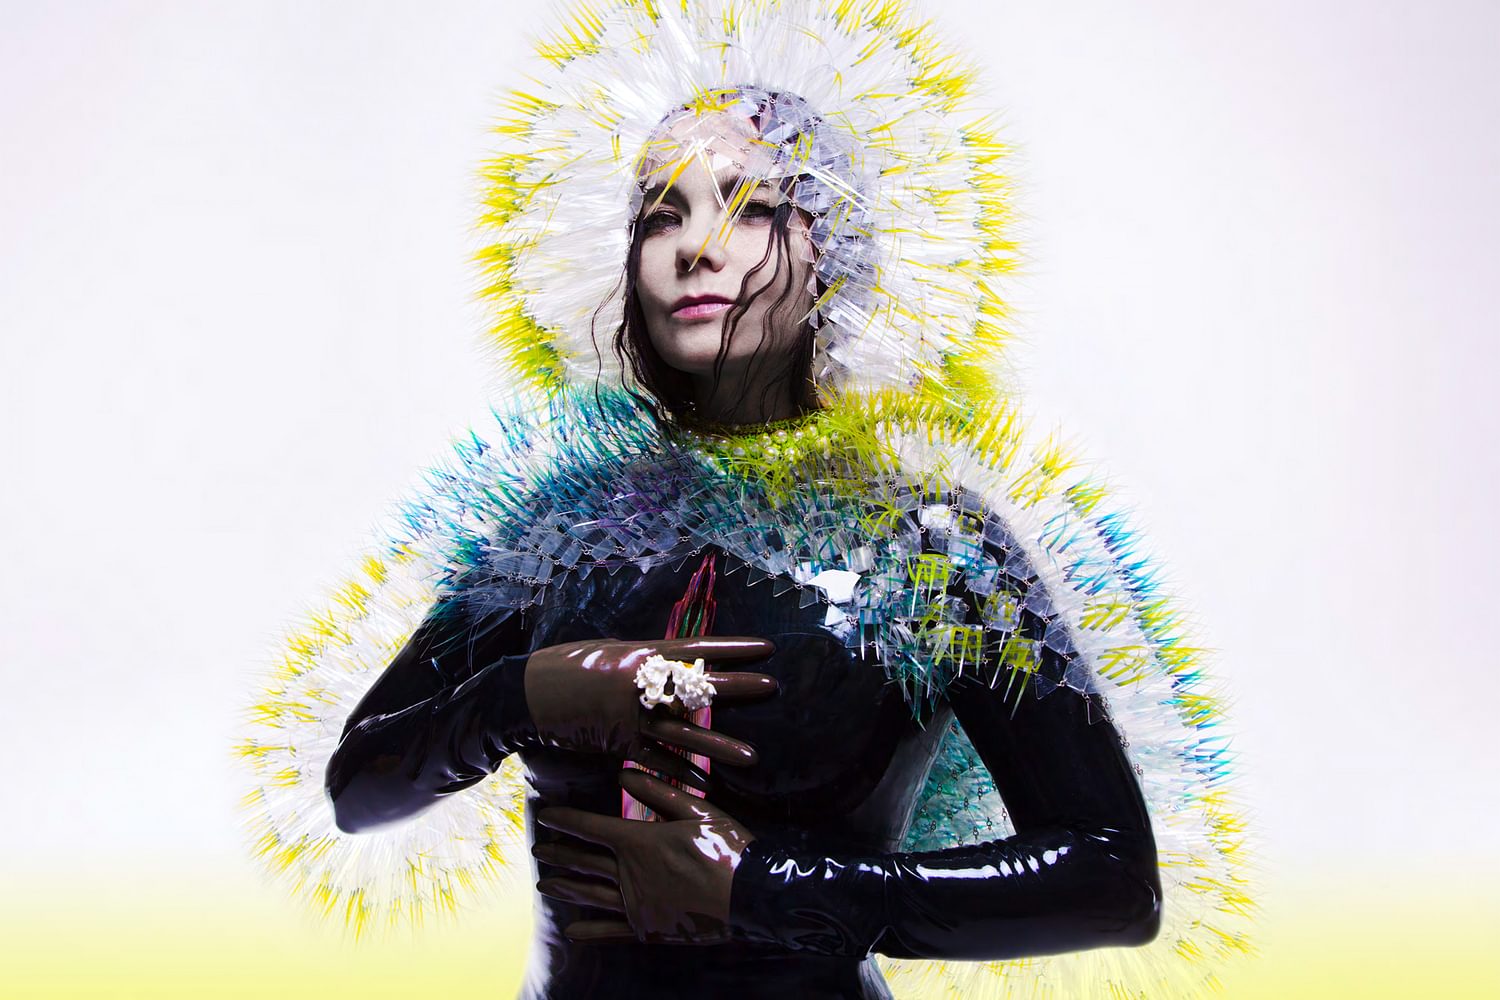 Björk is working on her next album